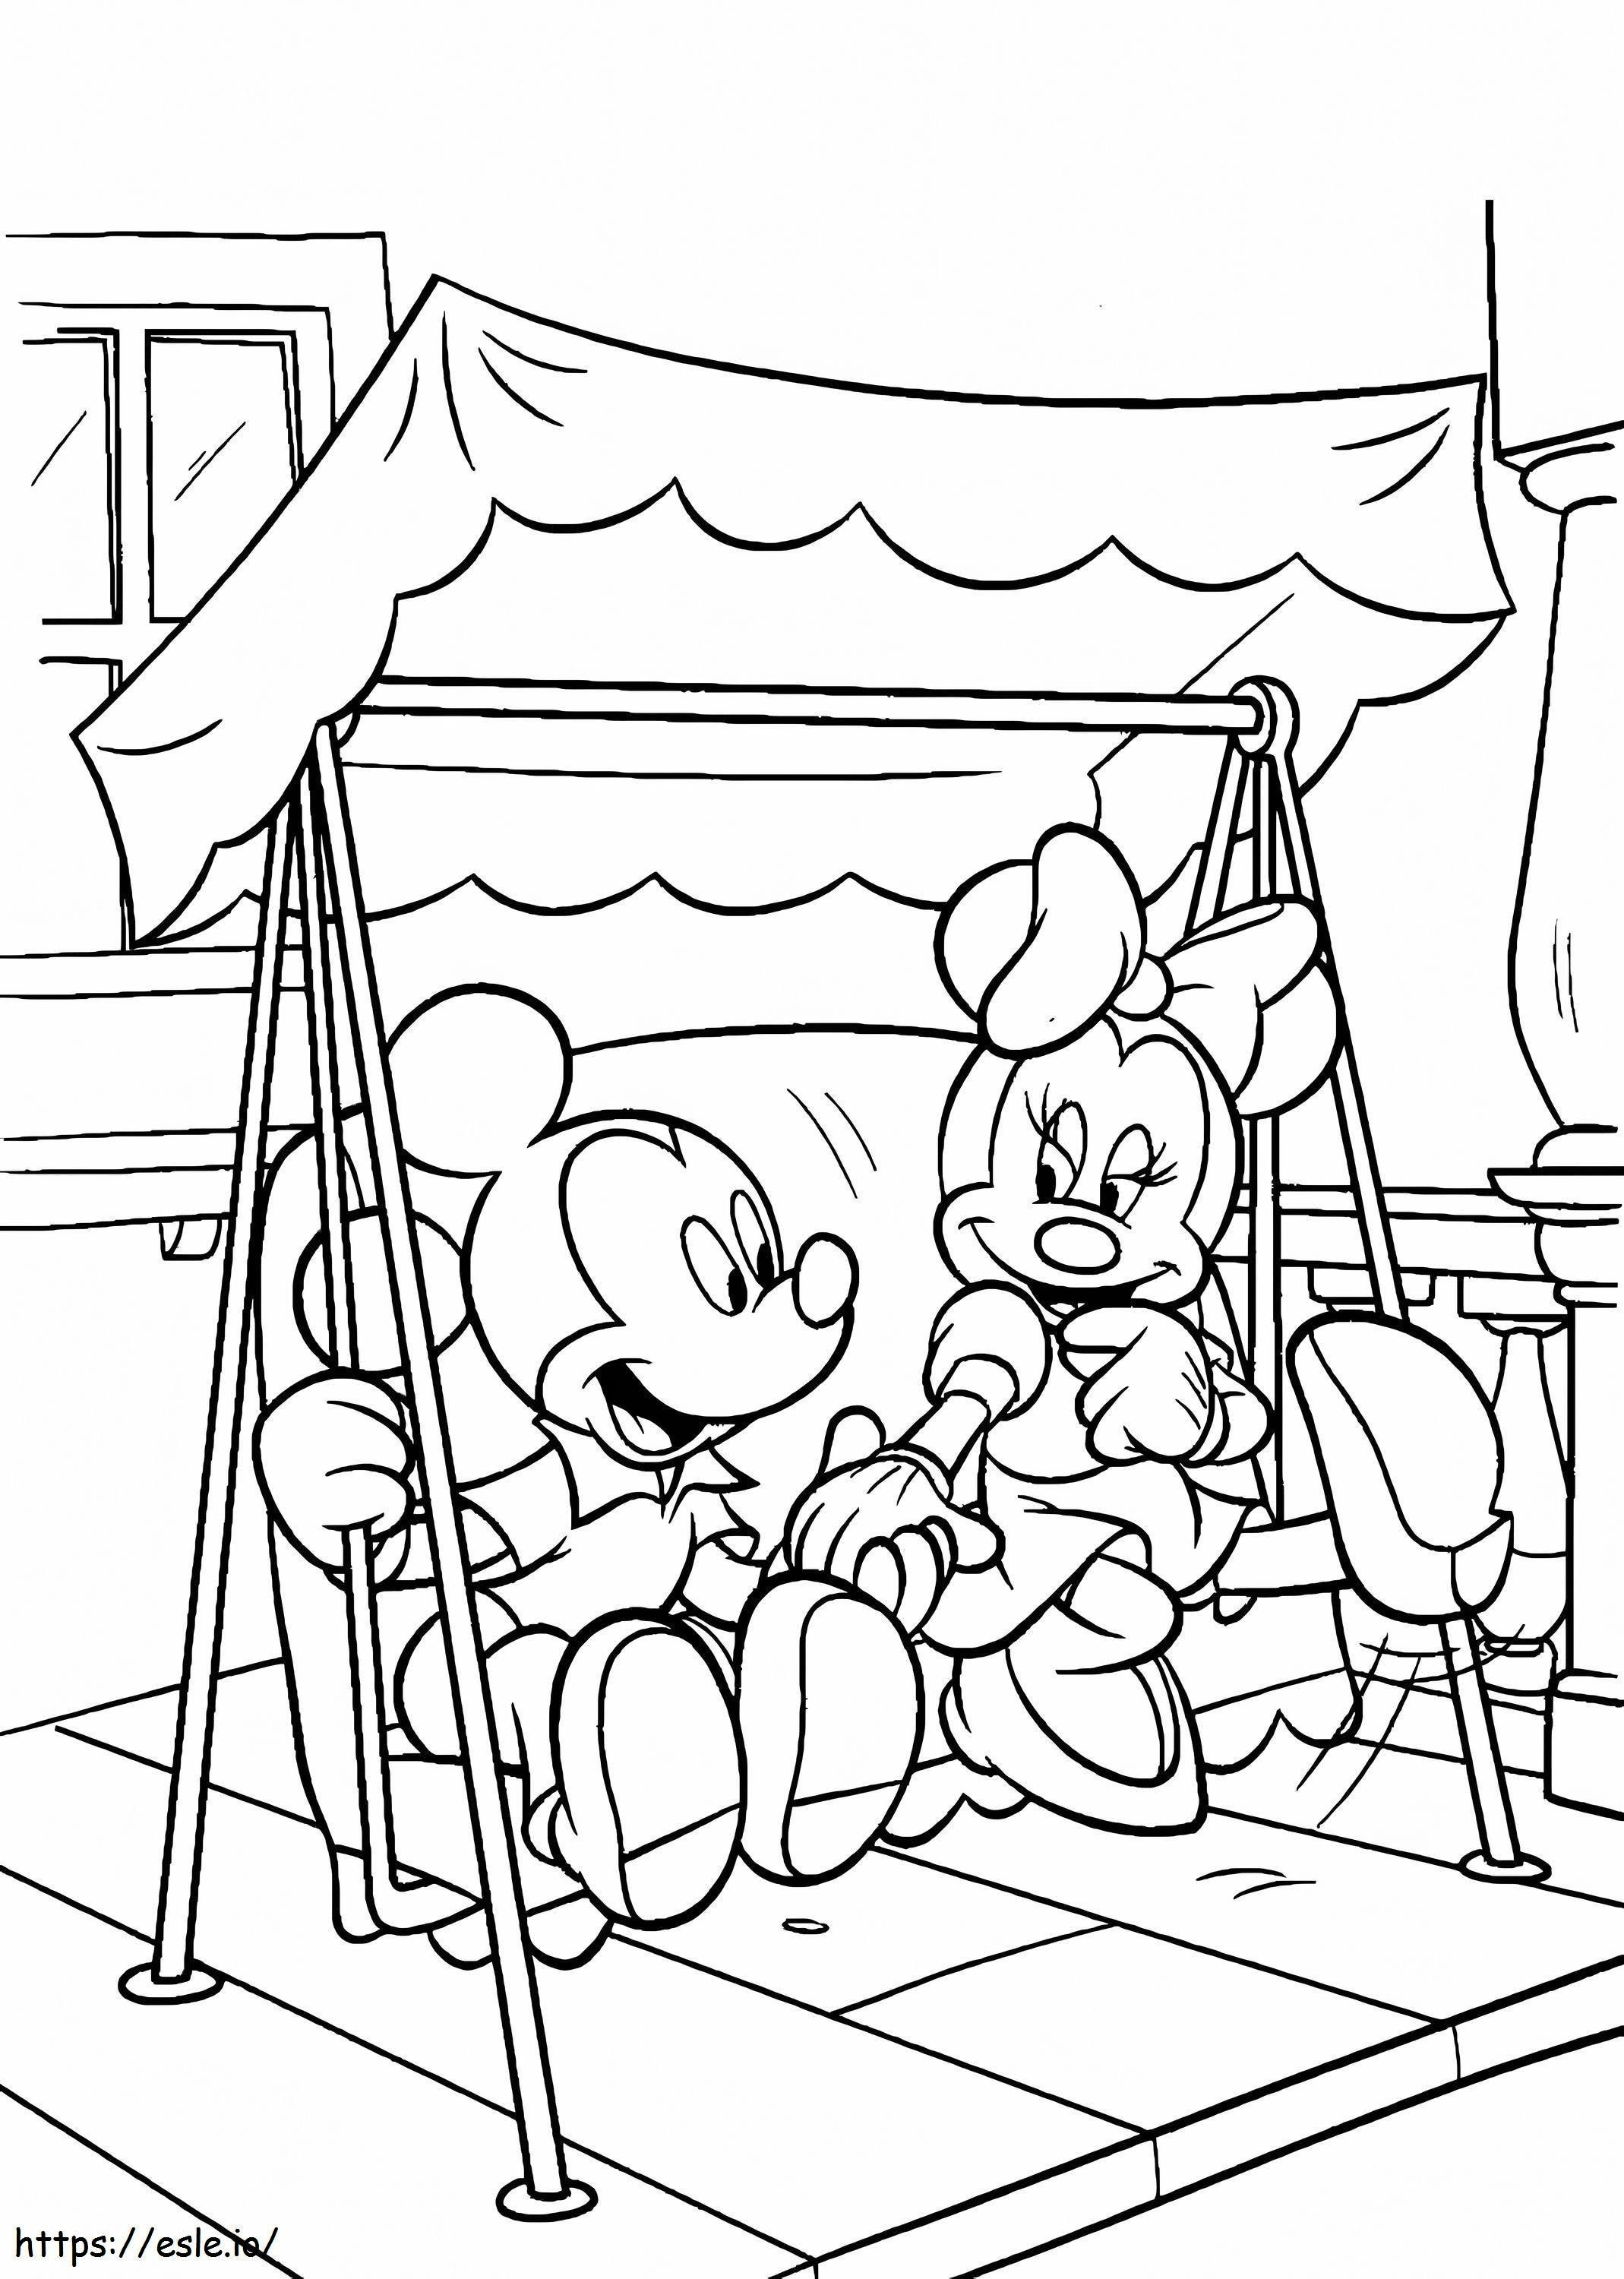 Mickey e Minnie Mouse brincam nos balanços para colorir